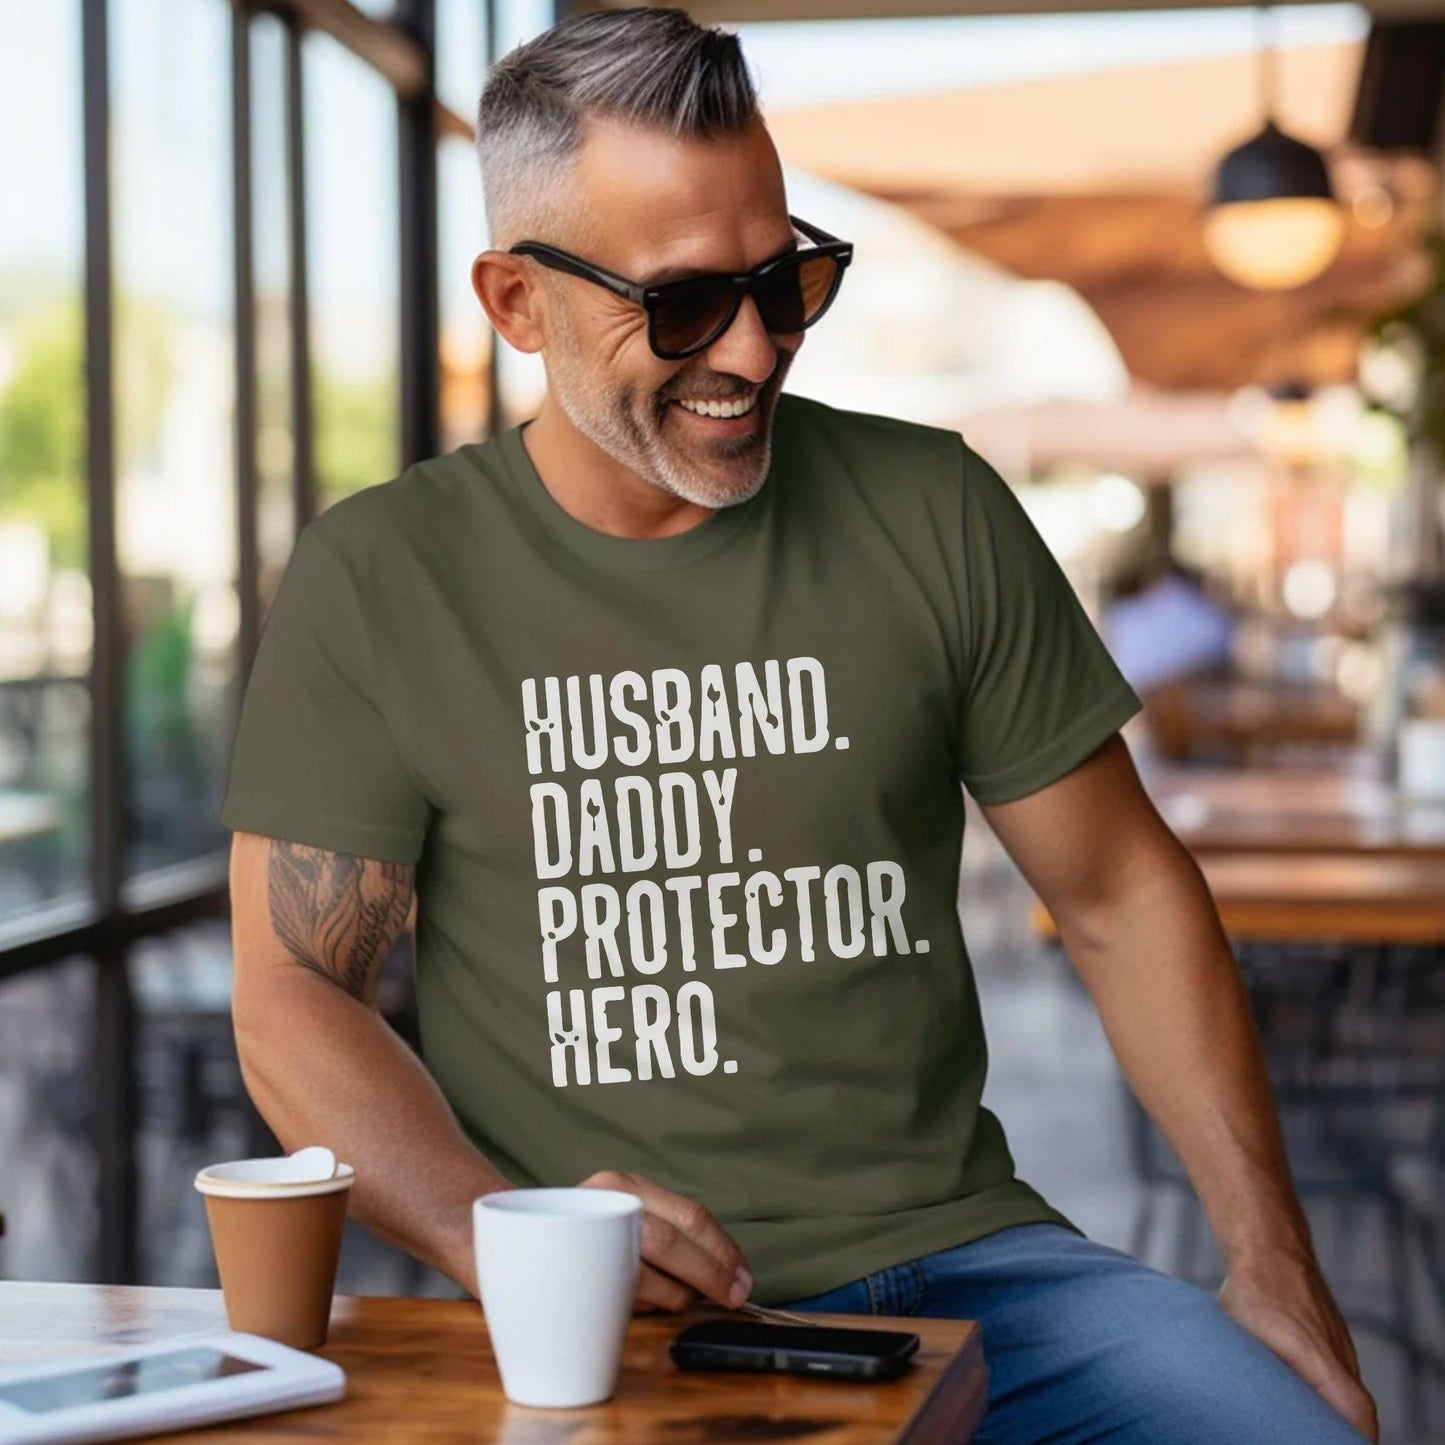 Ehemann Papa Beschützer Helden Shirt – Geschenk für Ihn - GiftHaus